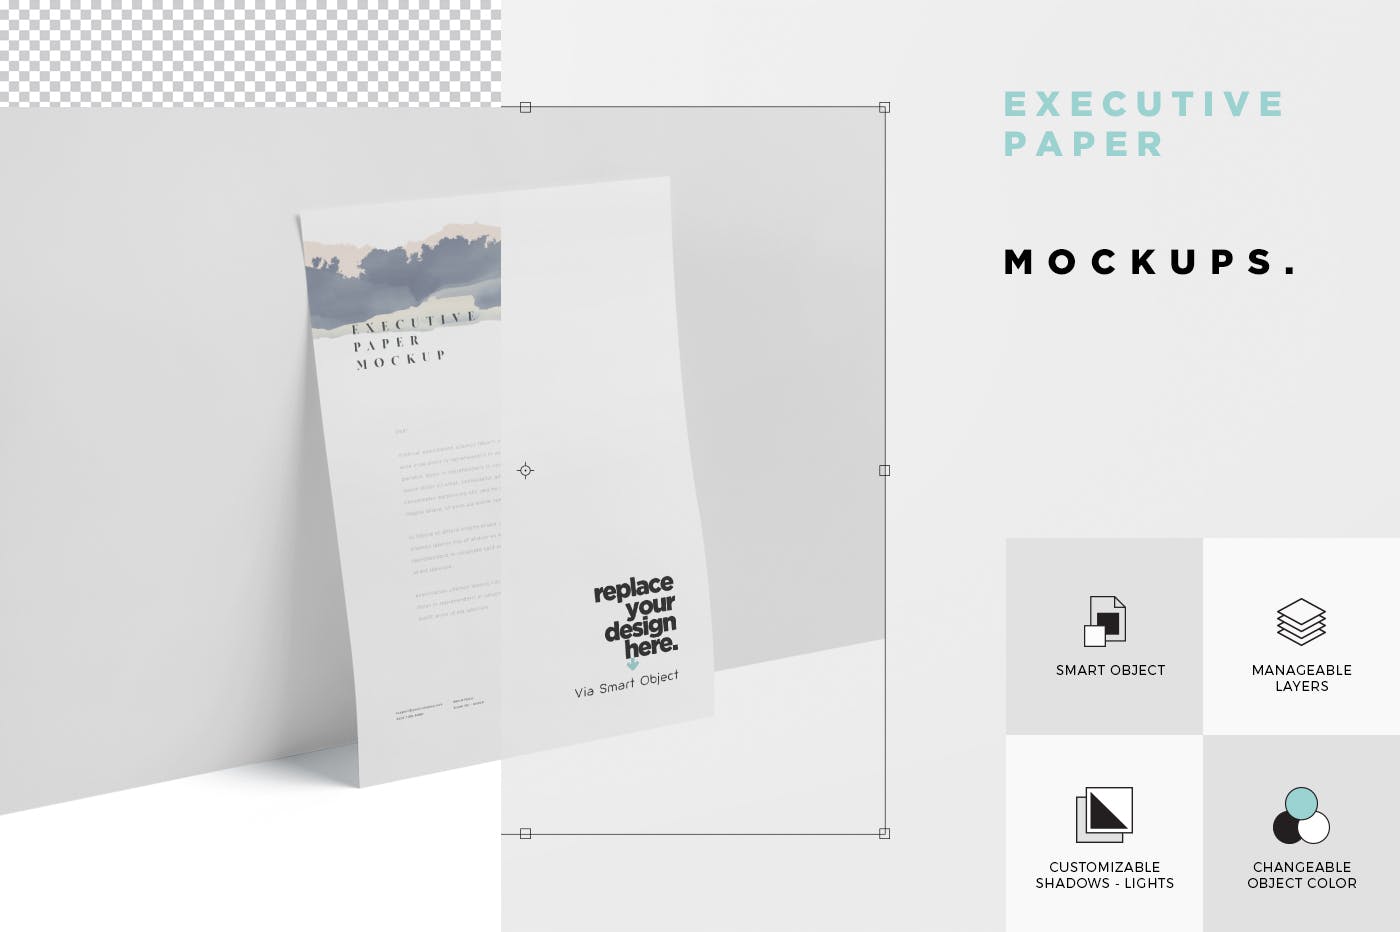 企业宣传单张设计效果图样机非凡图库精选 Executive Paper Mockup – 7×10 Inch Size插图(5)